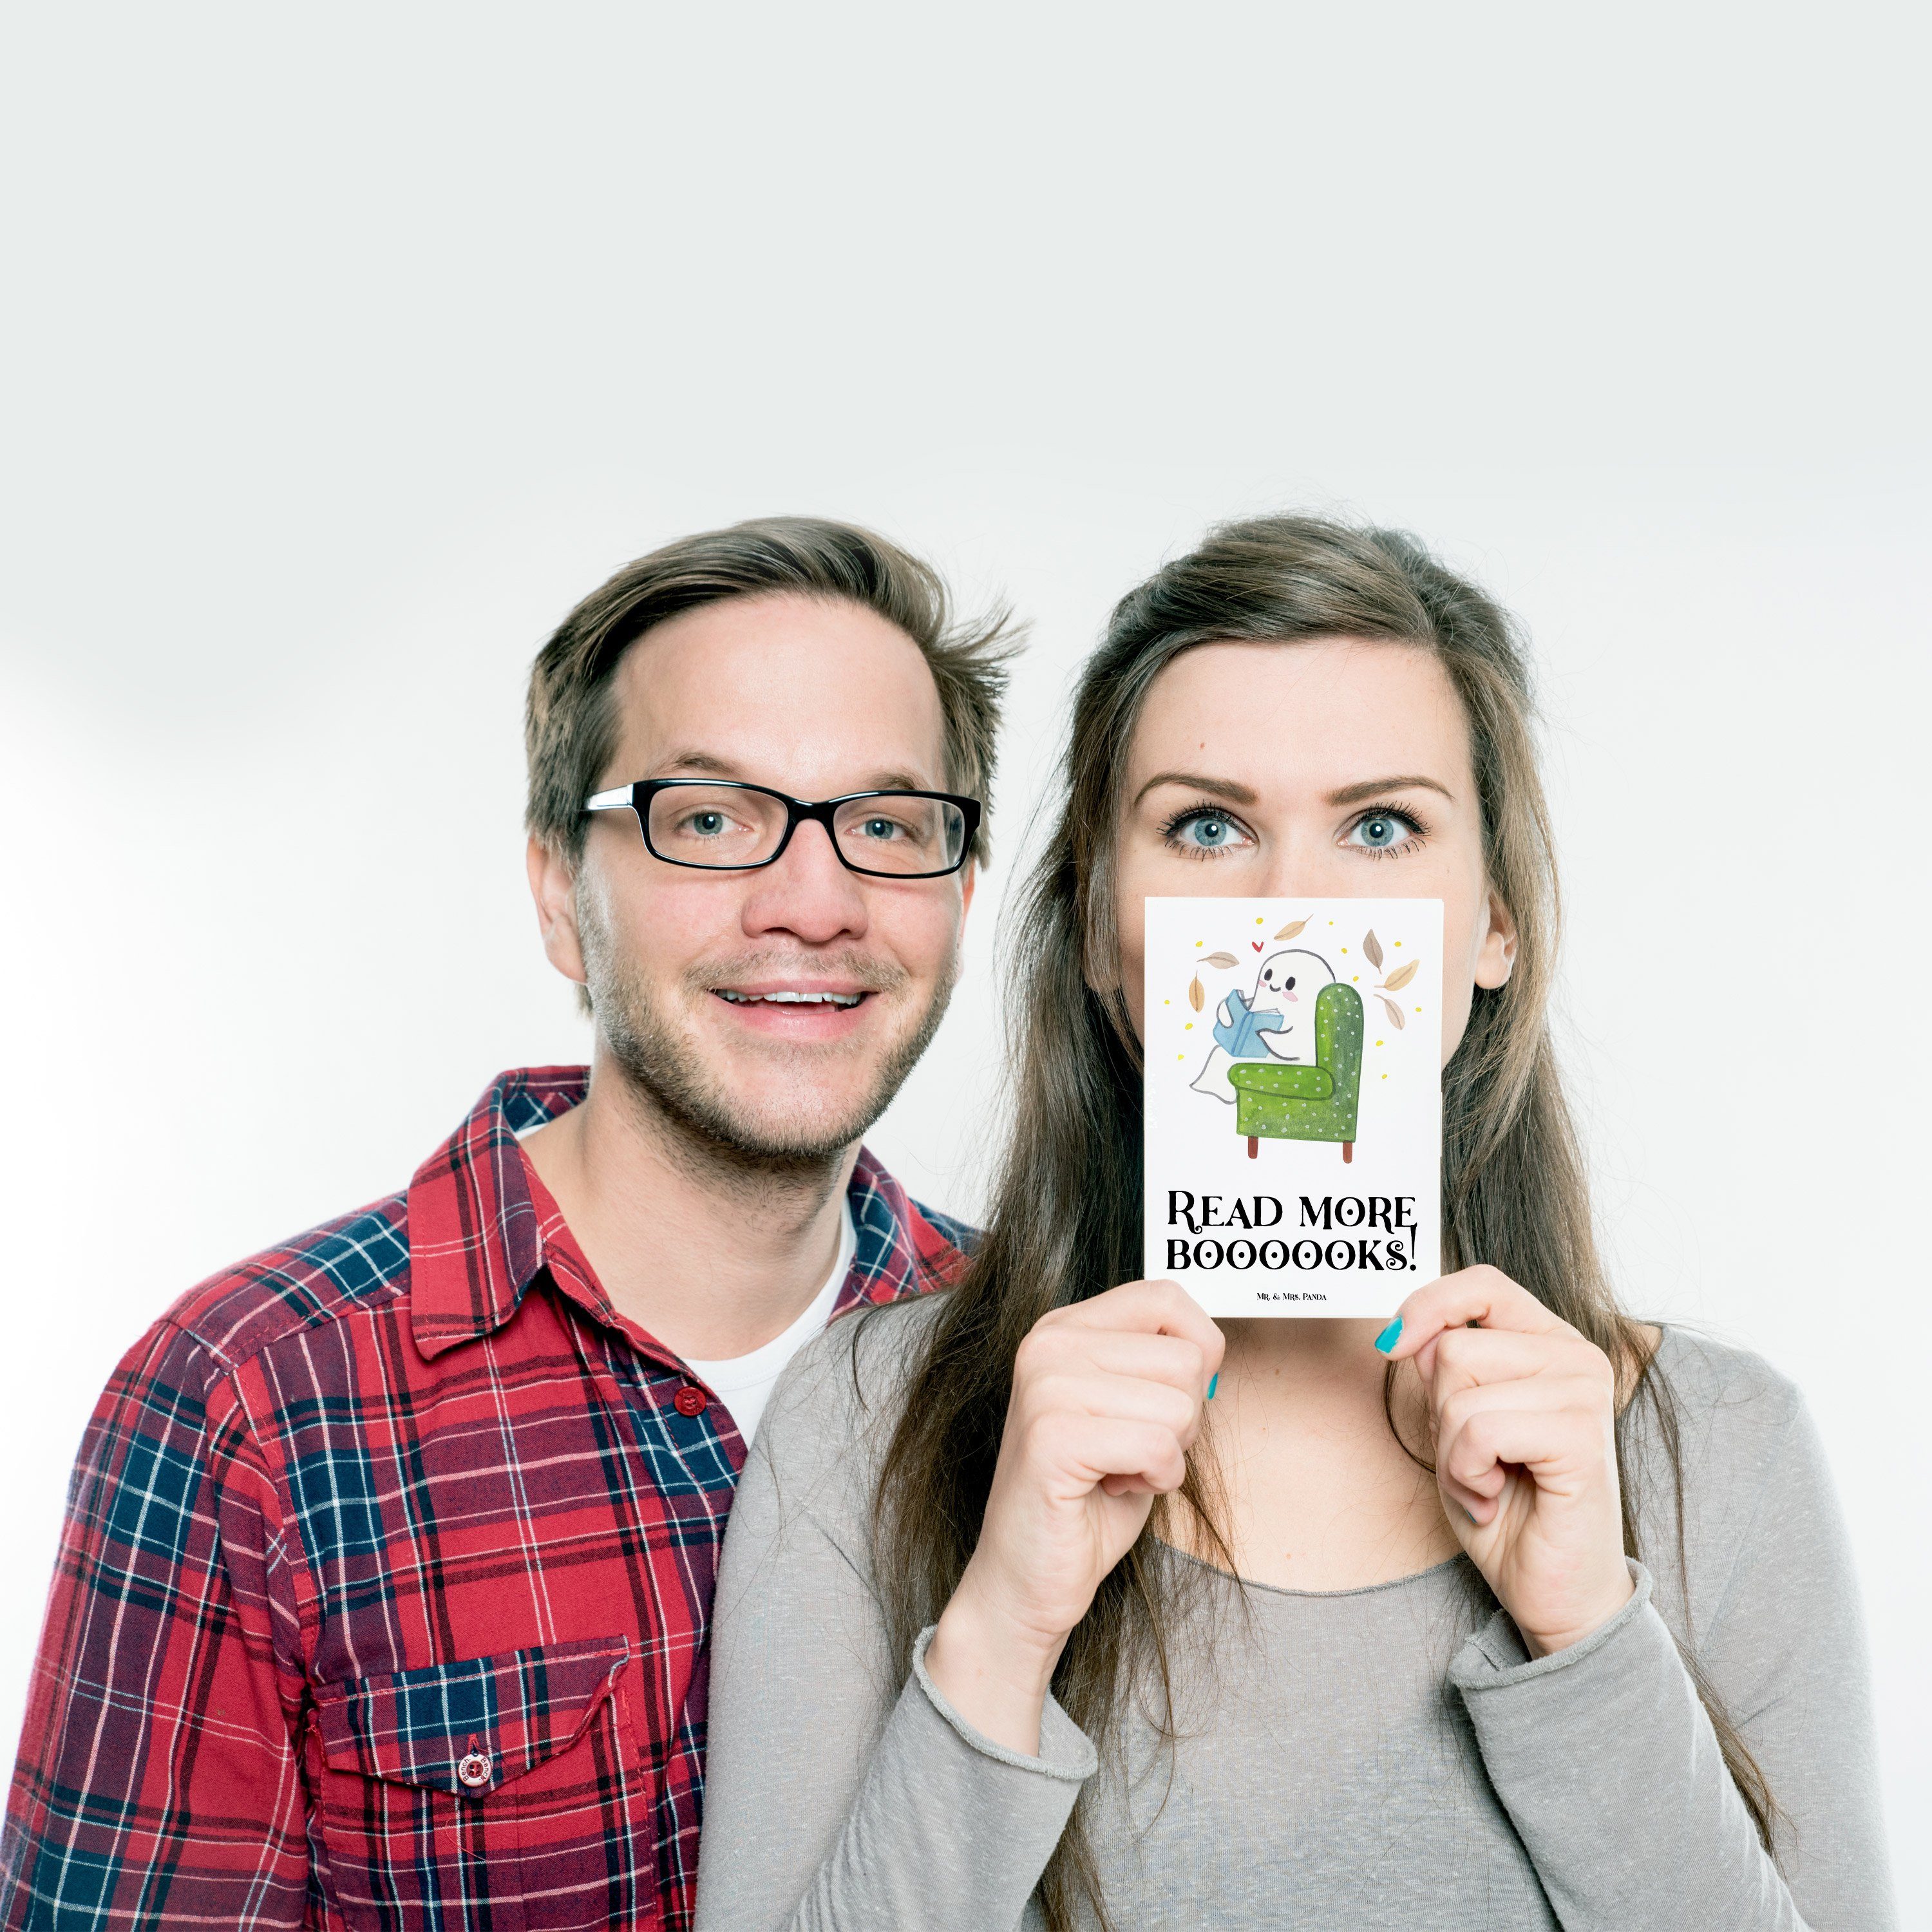 Mr. & Mrs. Geburtstagskarte, Buch Geschenk, Gespenst Postkarte Weiß Ansichtska - Panda - Deko